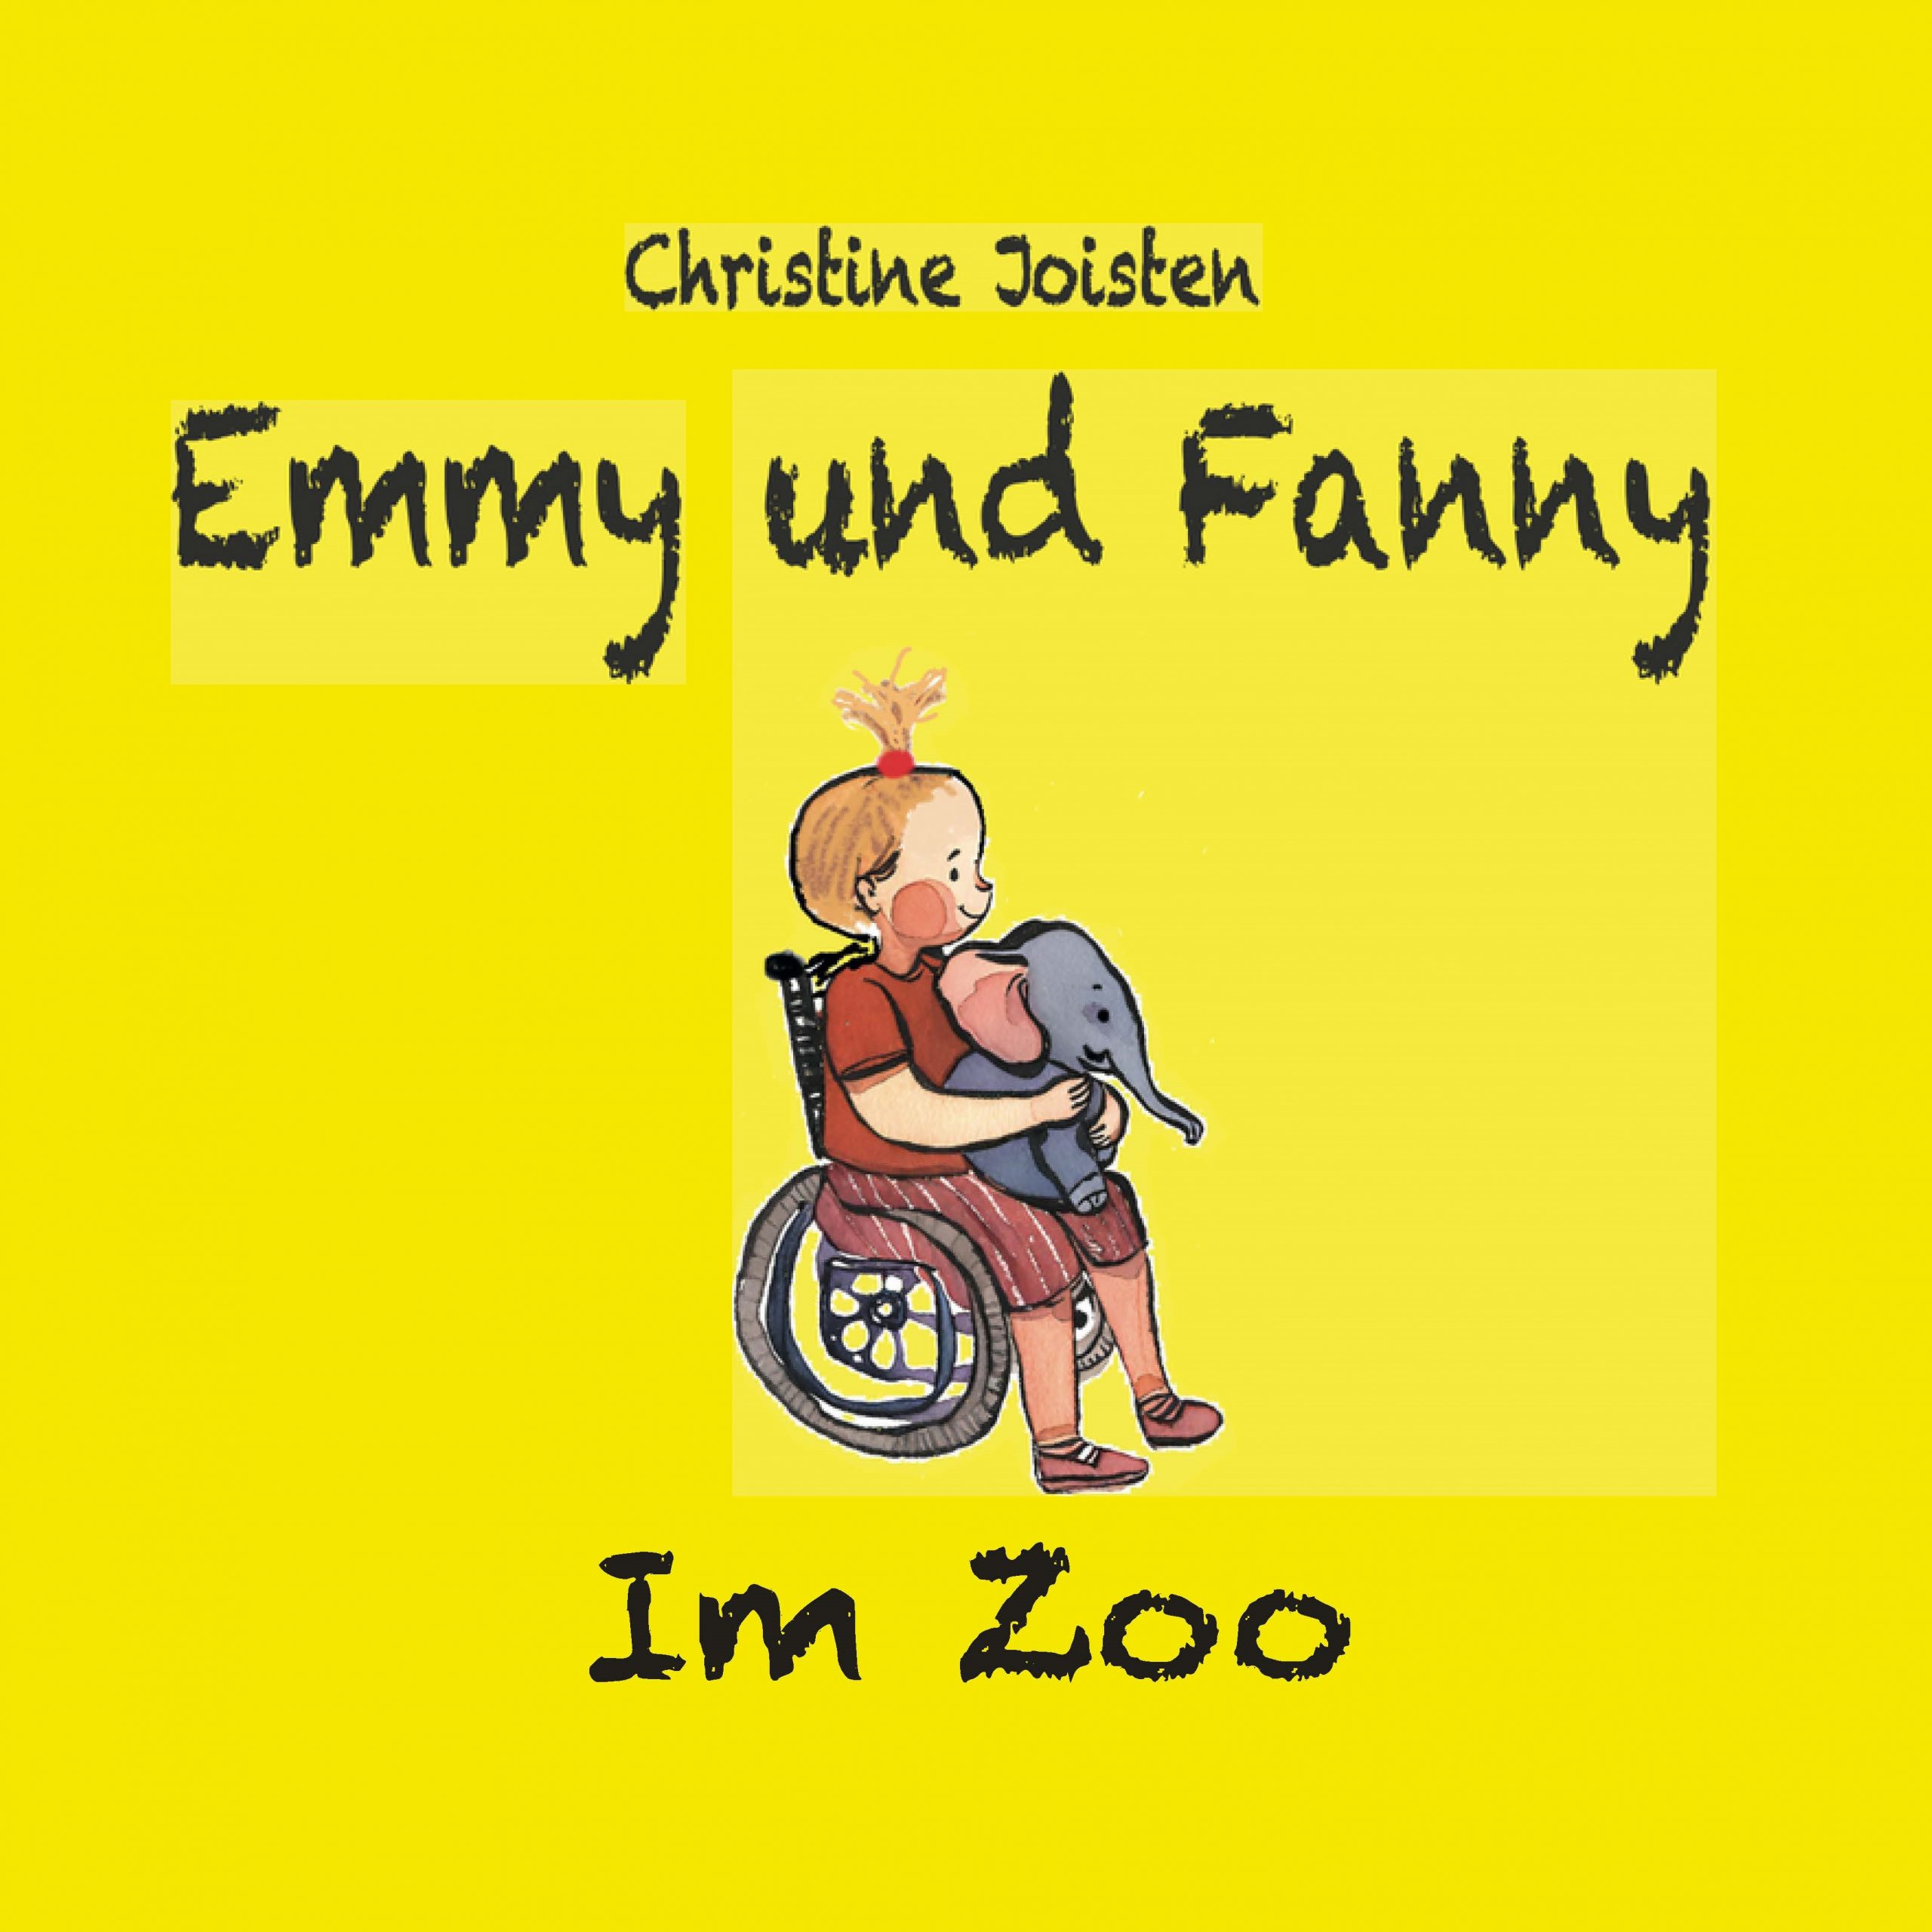 Die Titelseite des Buchs "Emmy und Fanny im Zoo" von Christine Joisten zeigt das Mädchen Emmy, das im Rollstuhl sitzt, wie sie den Zwergelefanten Fanny auf dem Schoß hält.